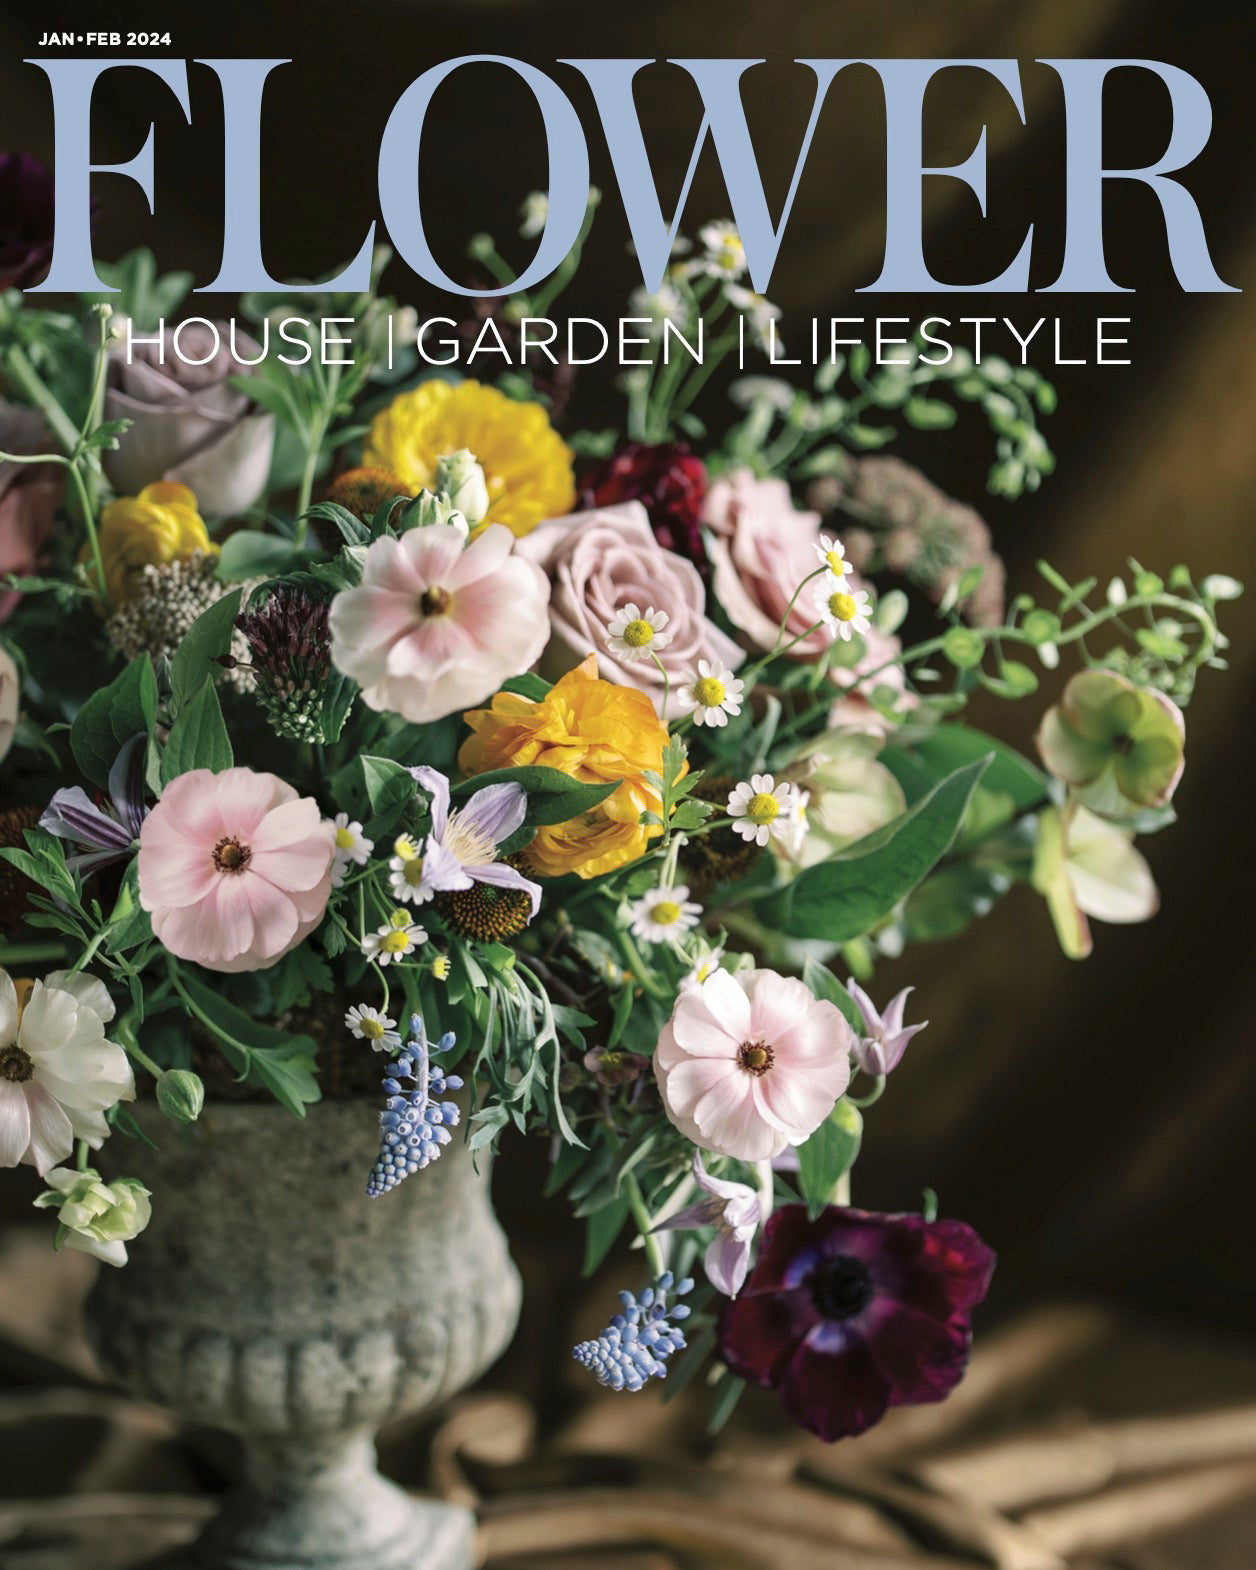 Flower Magazine